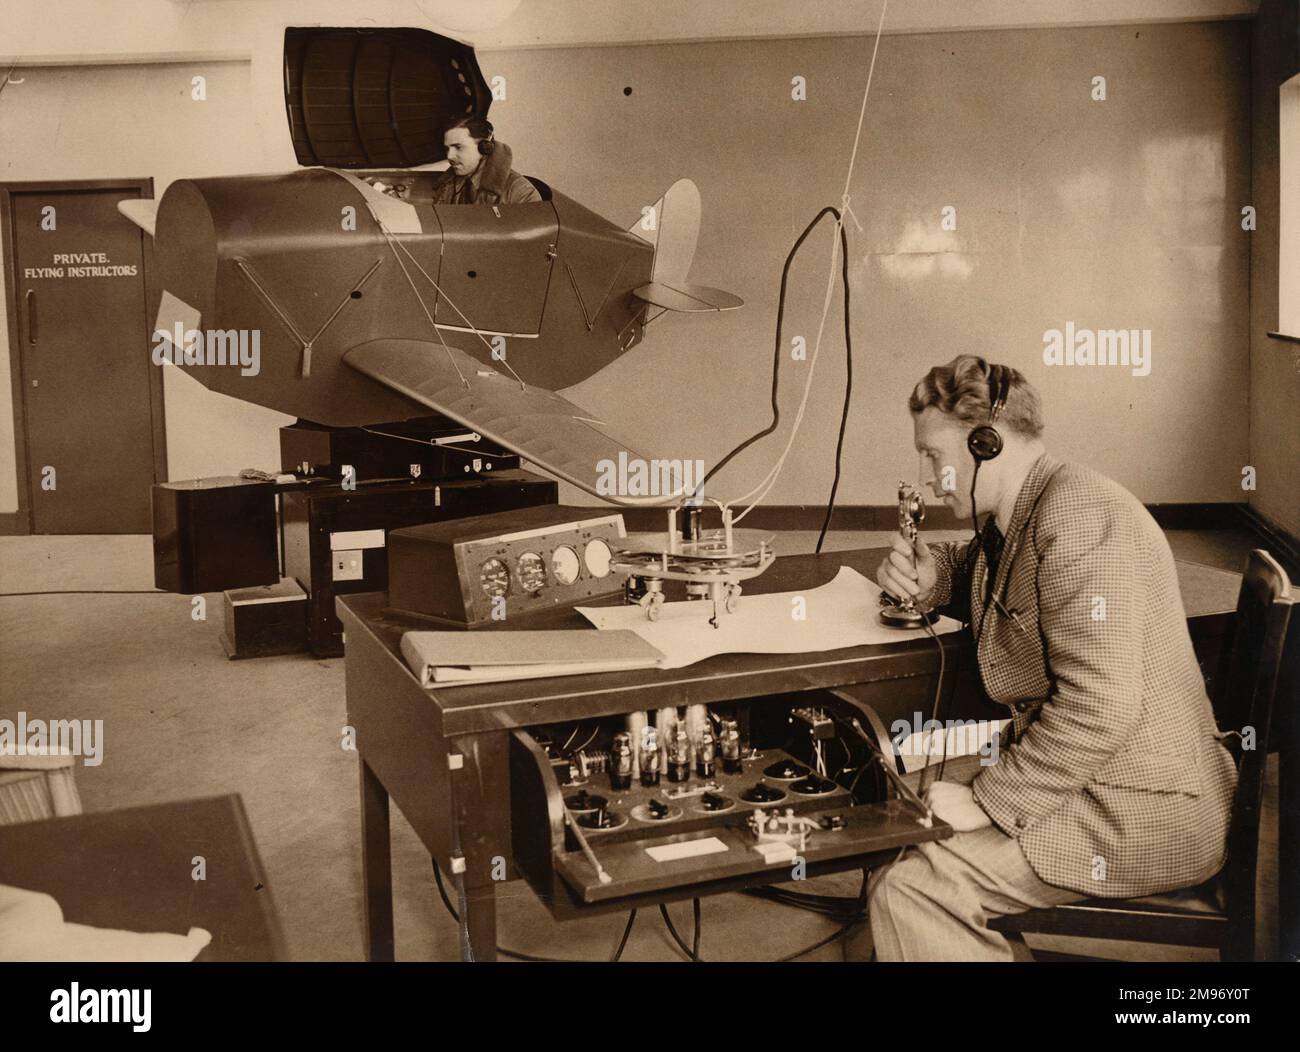 Pilota di riserva volontari RAF che intraprendono un'istruzione su un addestratore di collegamento, Gatwick, circa 1940. Correlando la posizione dell’aeromobile dello studente ai contrassegni su una carta (realizzati dalla ruota intaccata di un granchio semovente e sterzante) l’istruttore è stato in grado di controllare manualmente la trasmissione dei segnali radiofonici simulati all’istruttore. Foto Stock